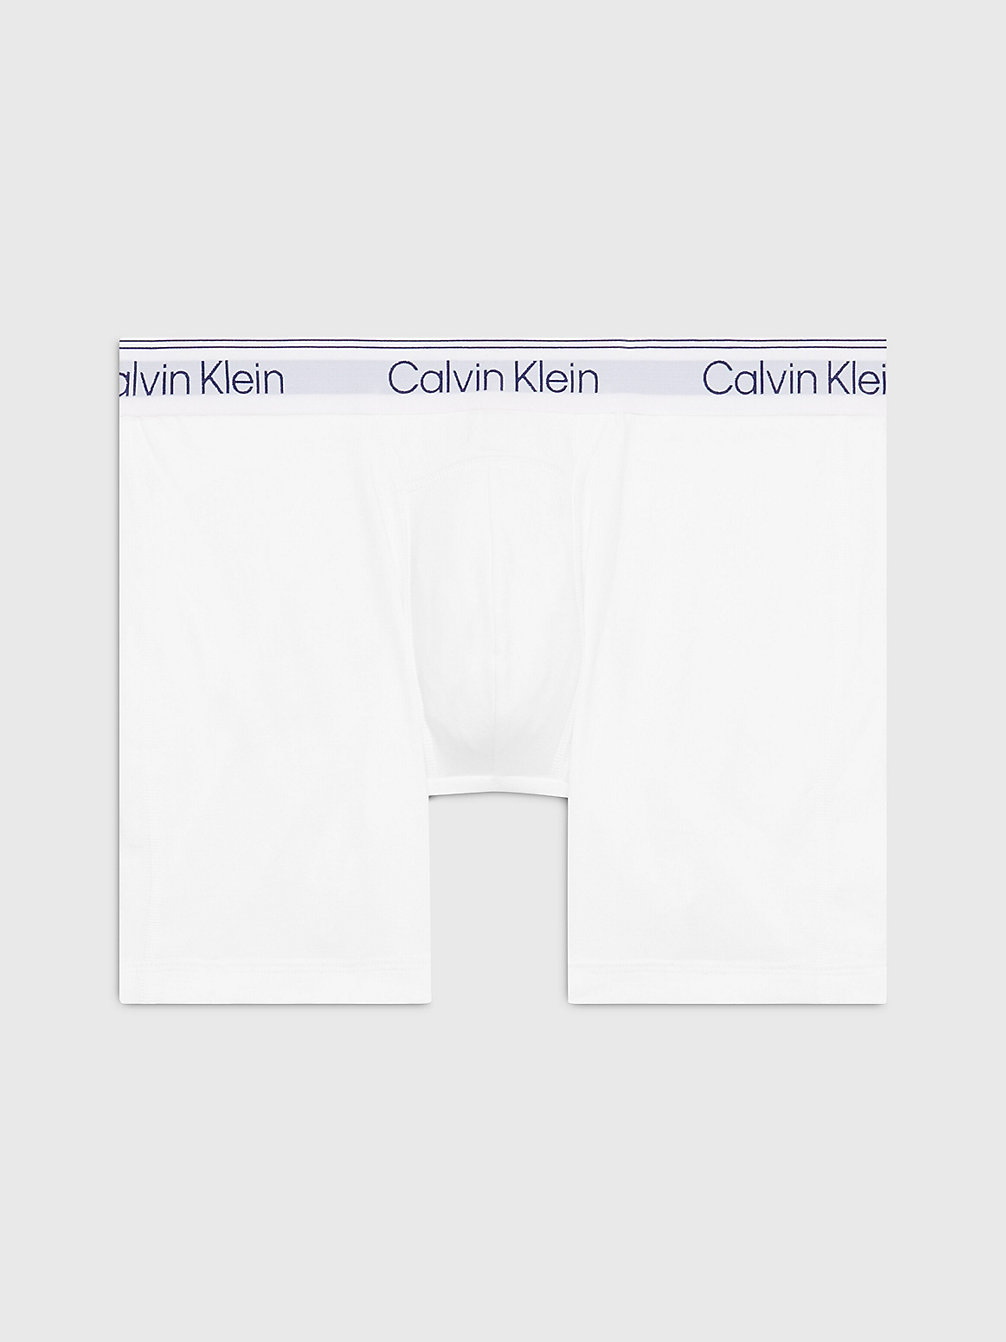 WHITE > Boxer Slips - Athletic Cotton > undefined Herren - Calvin Klein